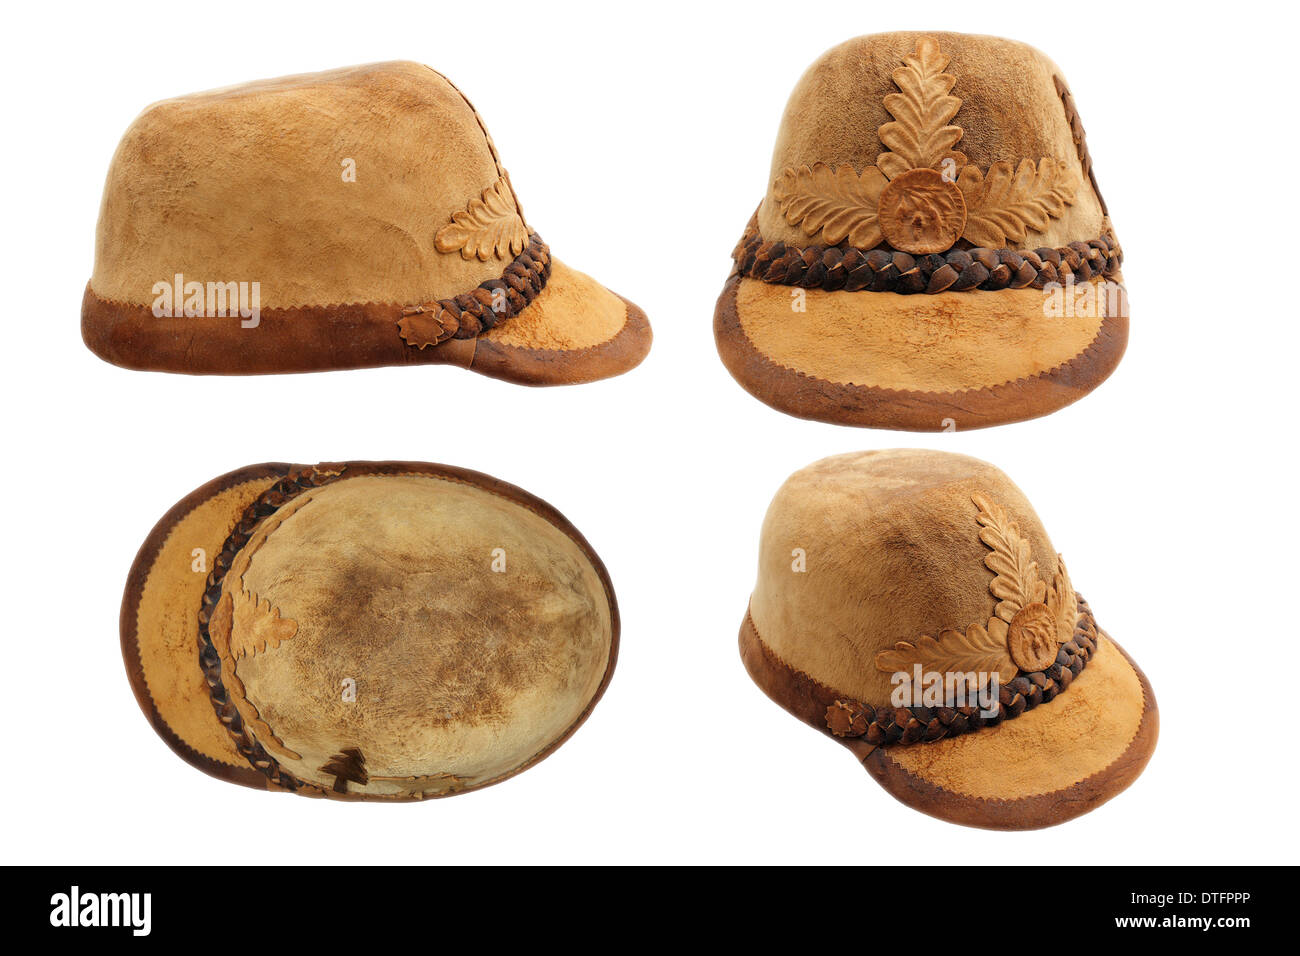 Tradizionale la caccia della Transilvania hat, realizzata dal legname raccolto dai boschi e bollite, isolamento di quattro viste su bianco Foto Stock